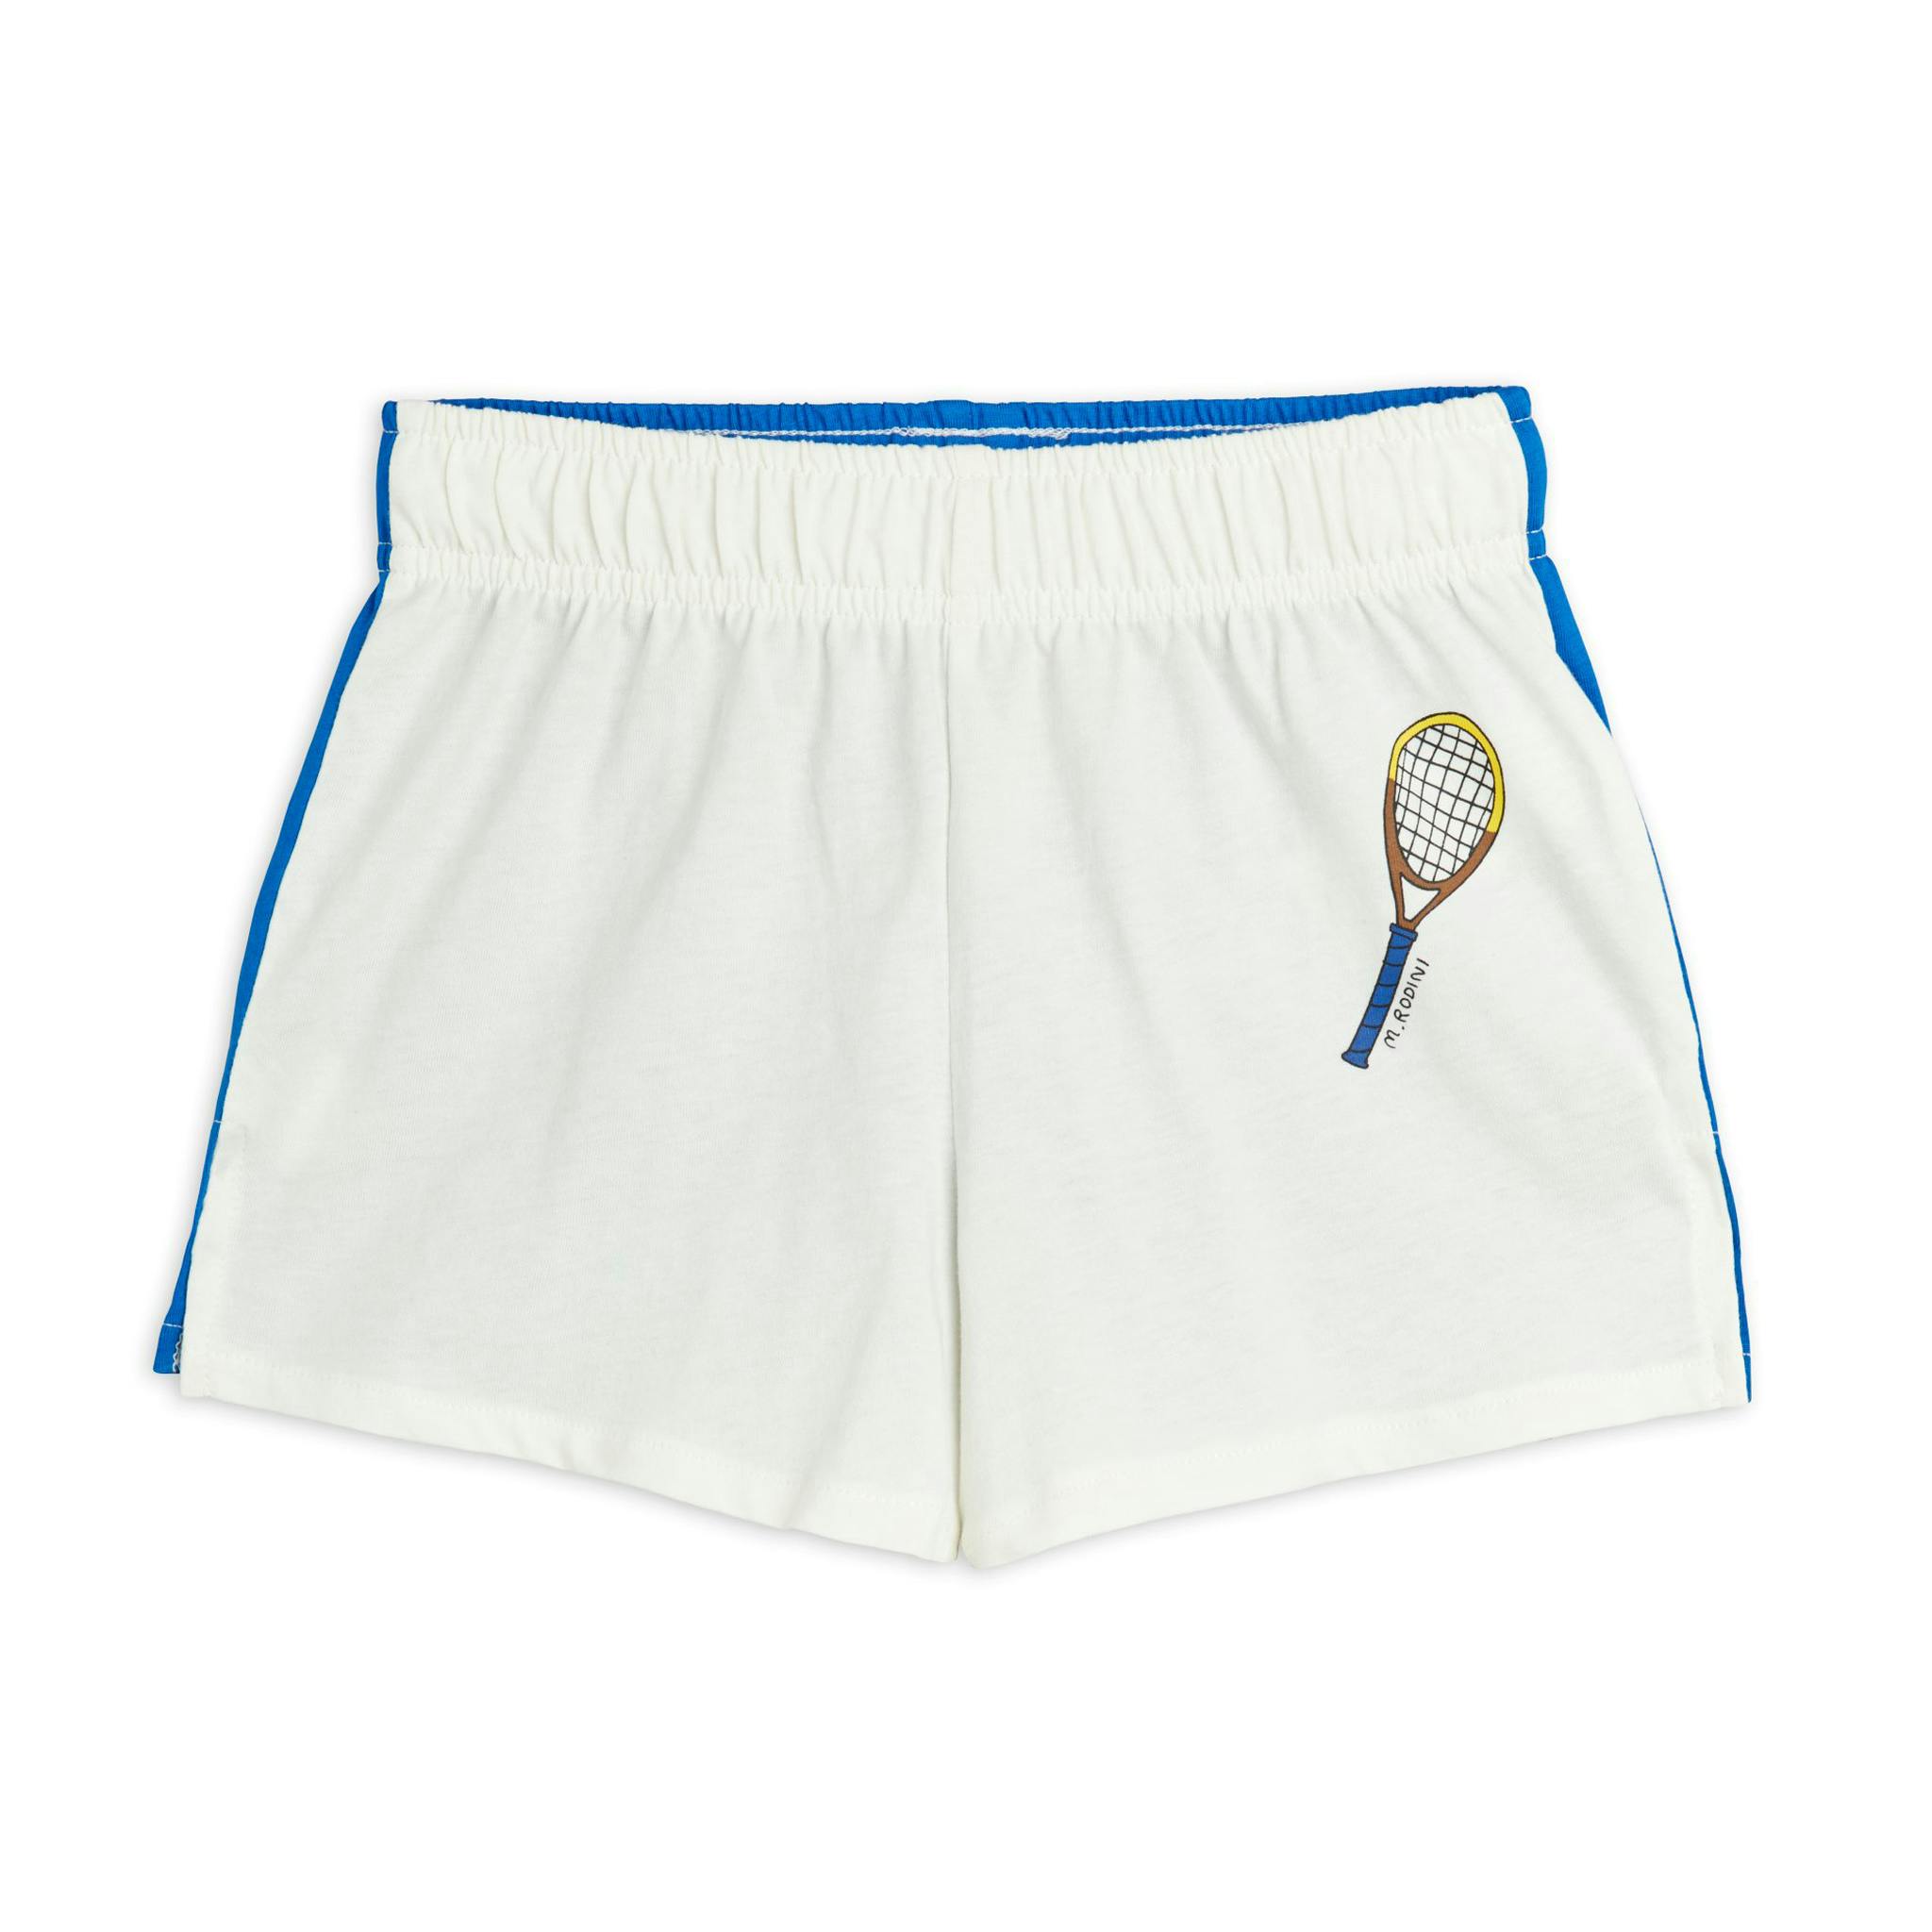 Blå och vita shorts från Mini Rodini. Litet tennisracket framtill på vänster sida.